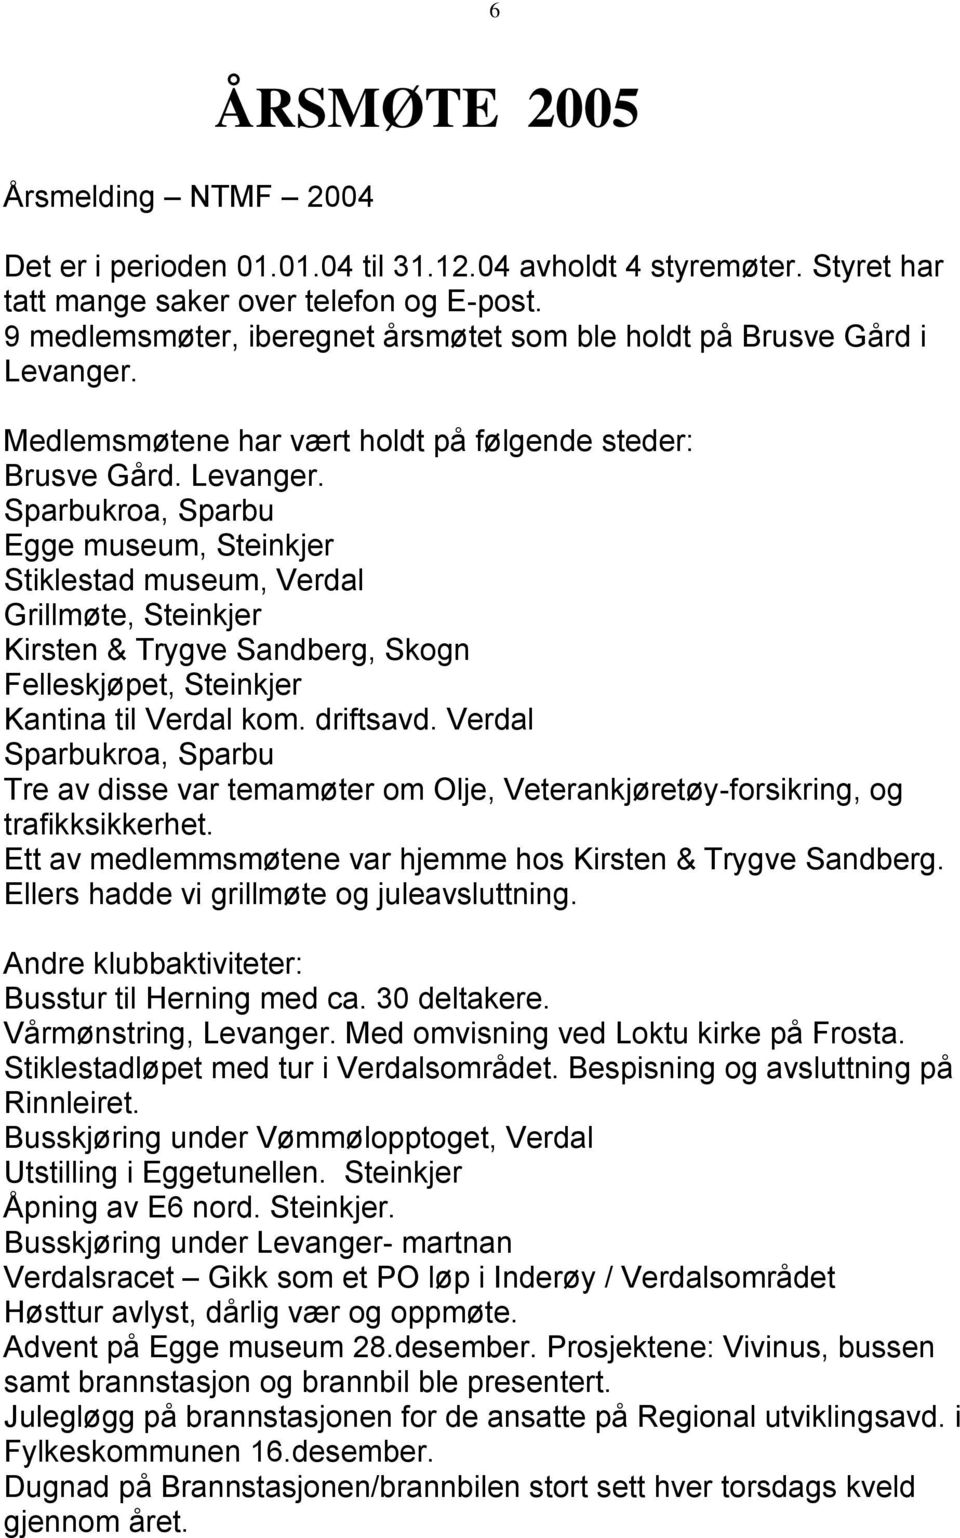 Medlemsmøtene har vært holdt på følgende steder: Brusve Gård. Levanger.